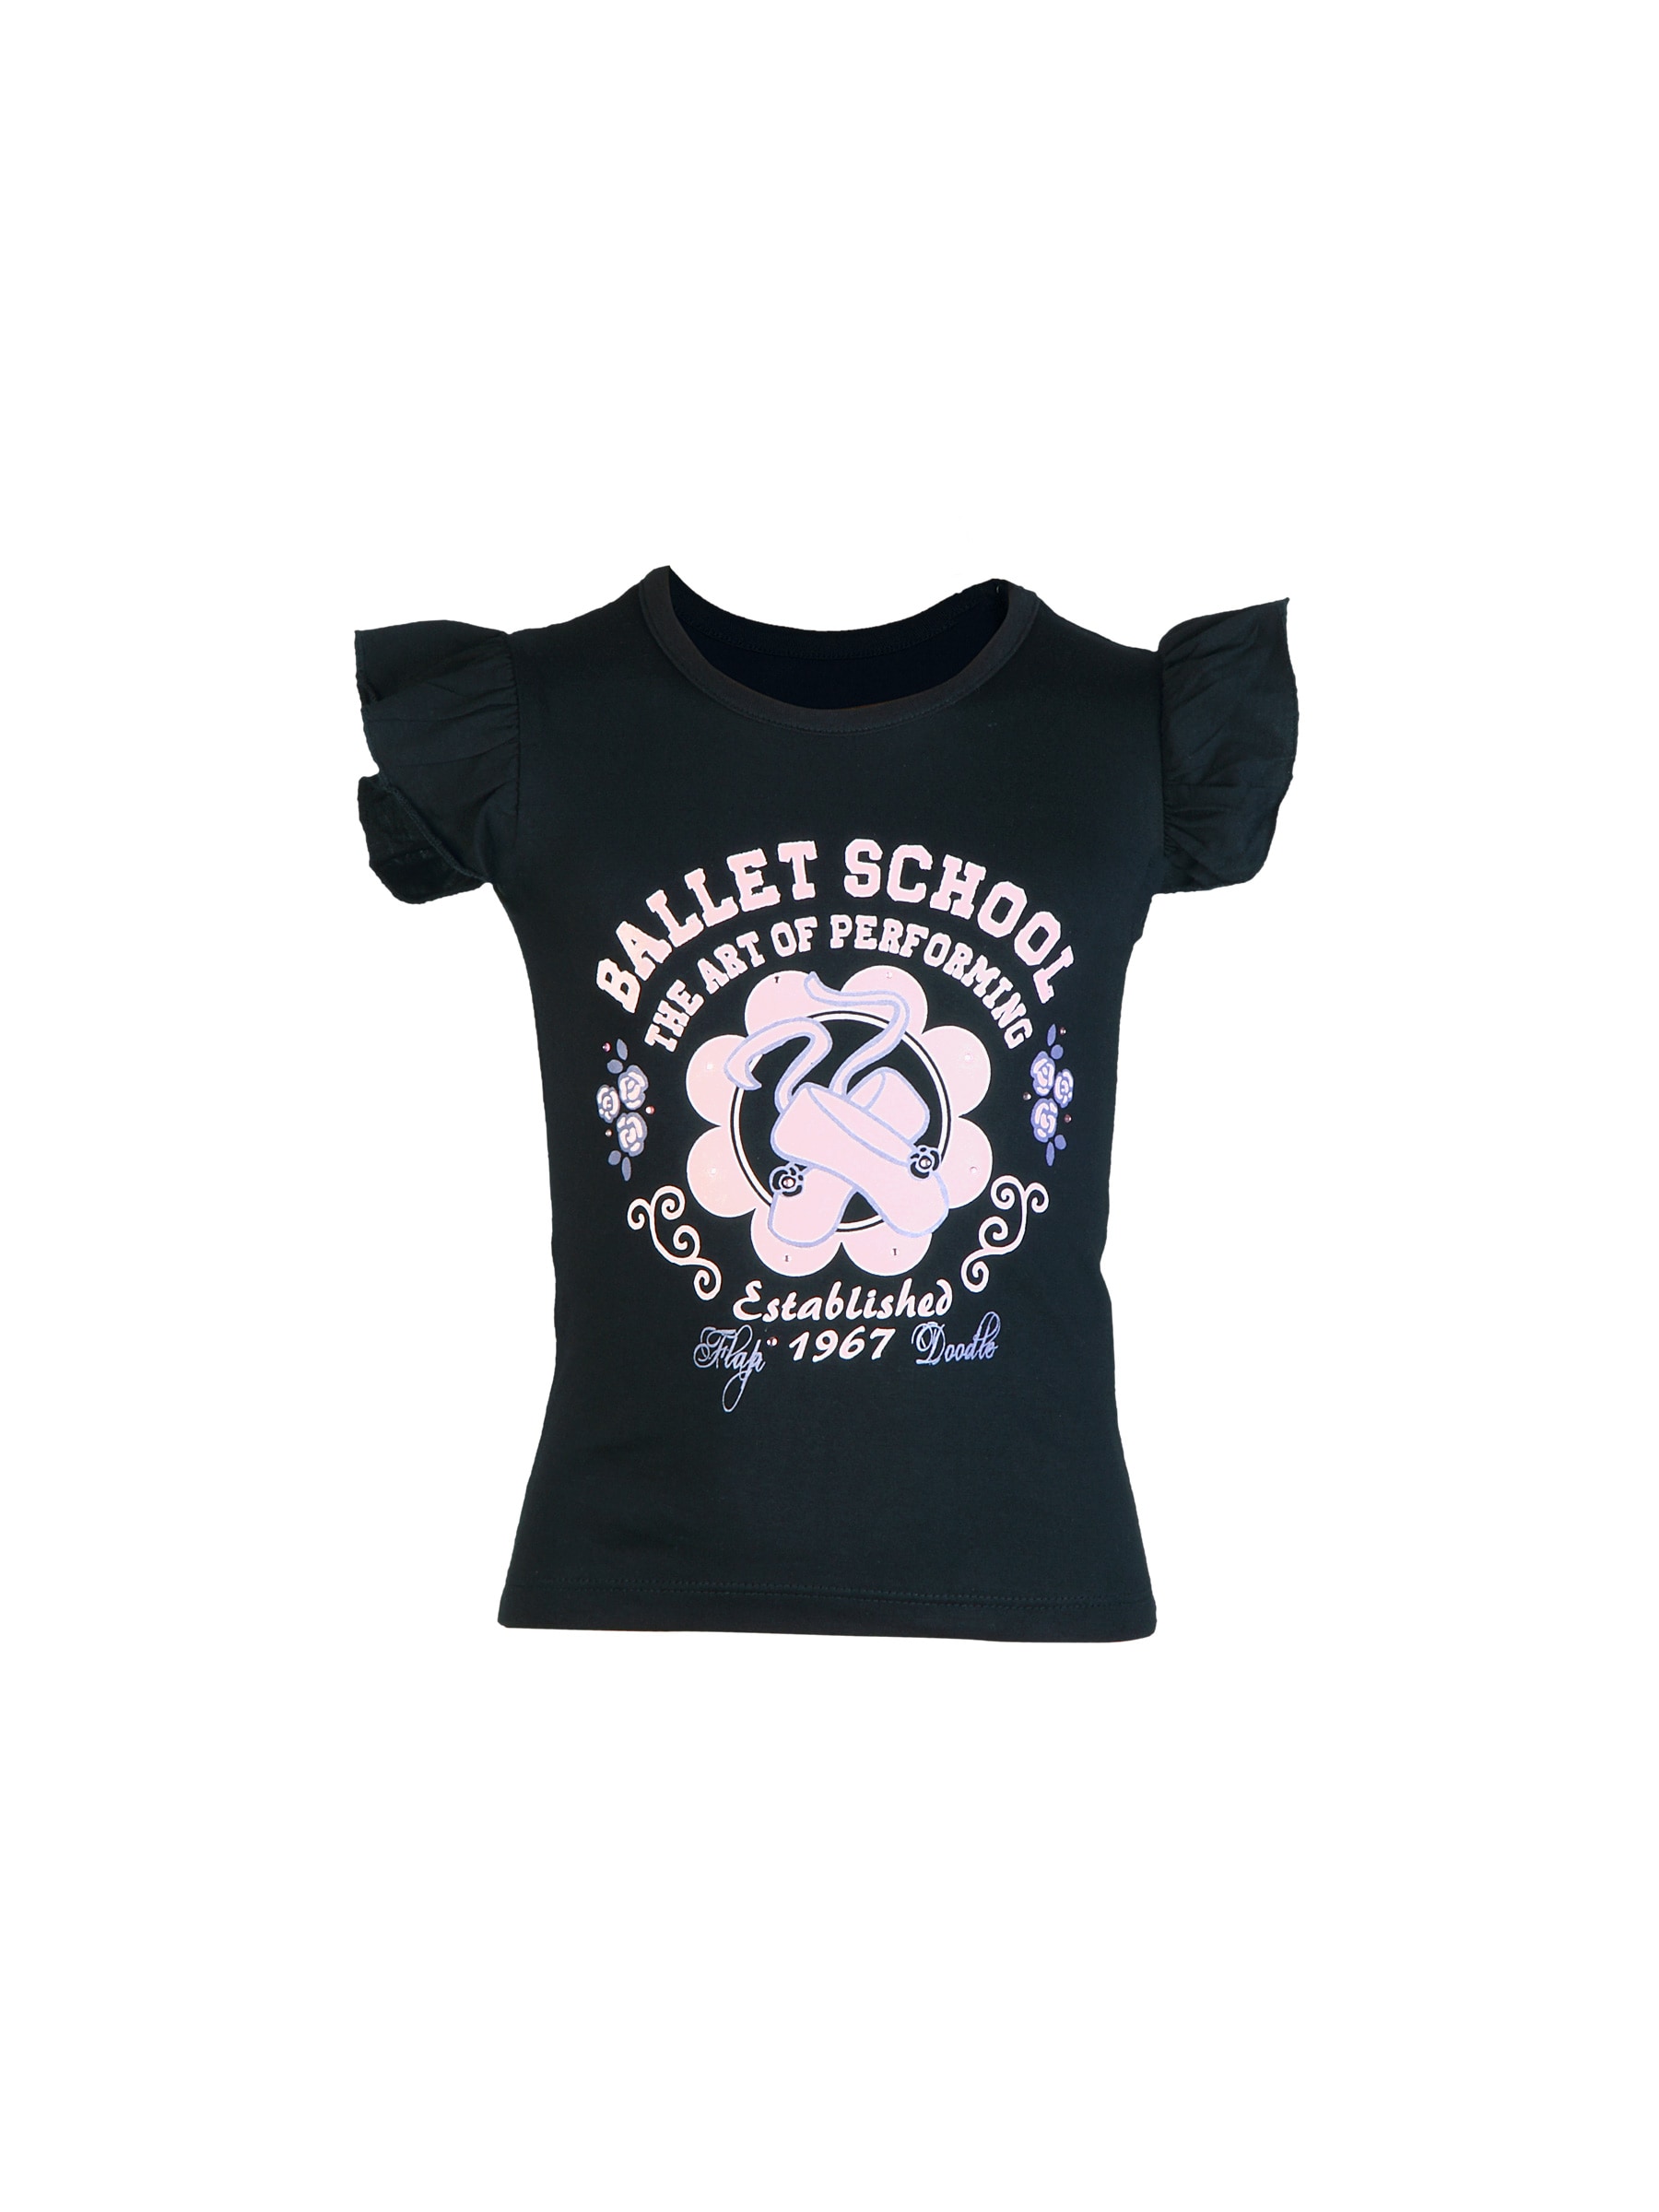 Doodle Girl Ballet School Black Tops